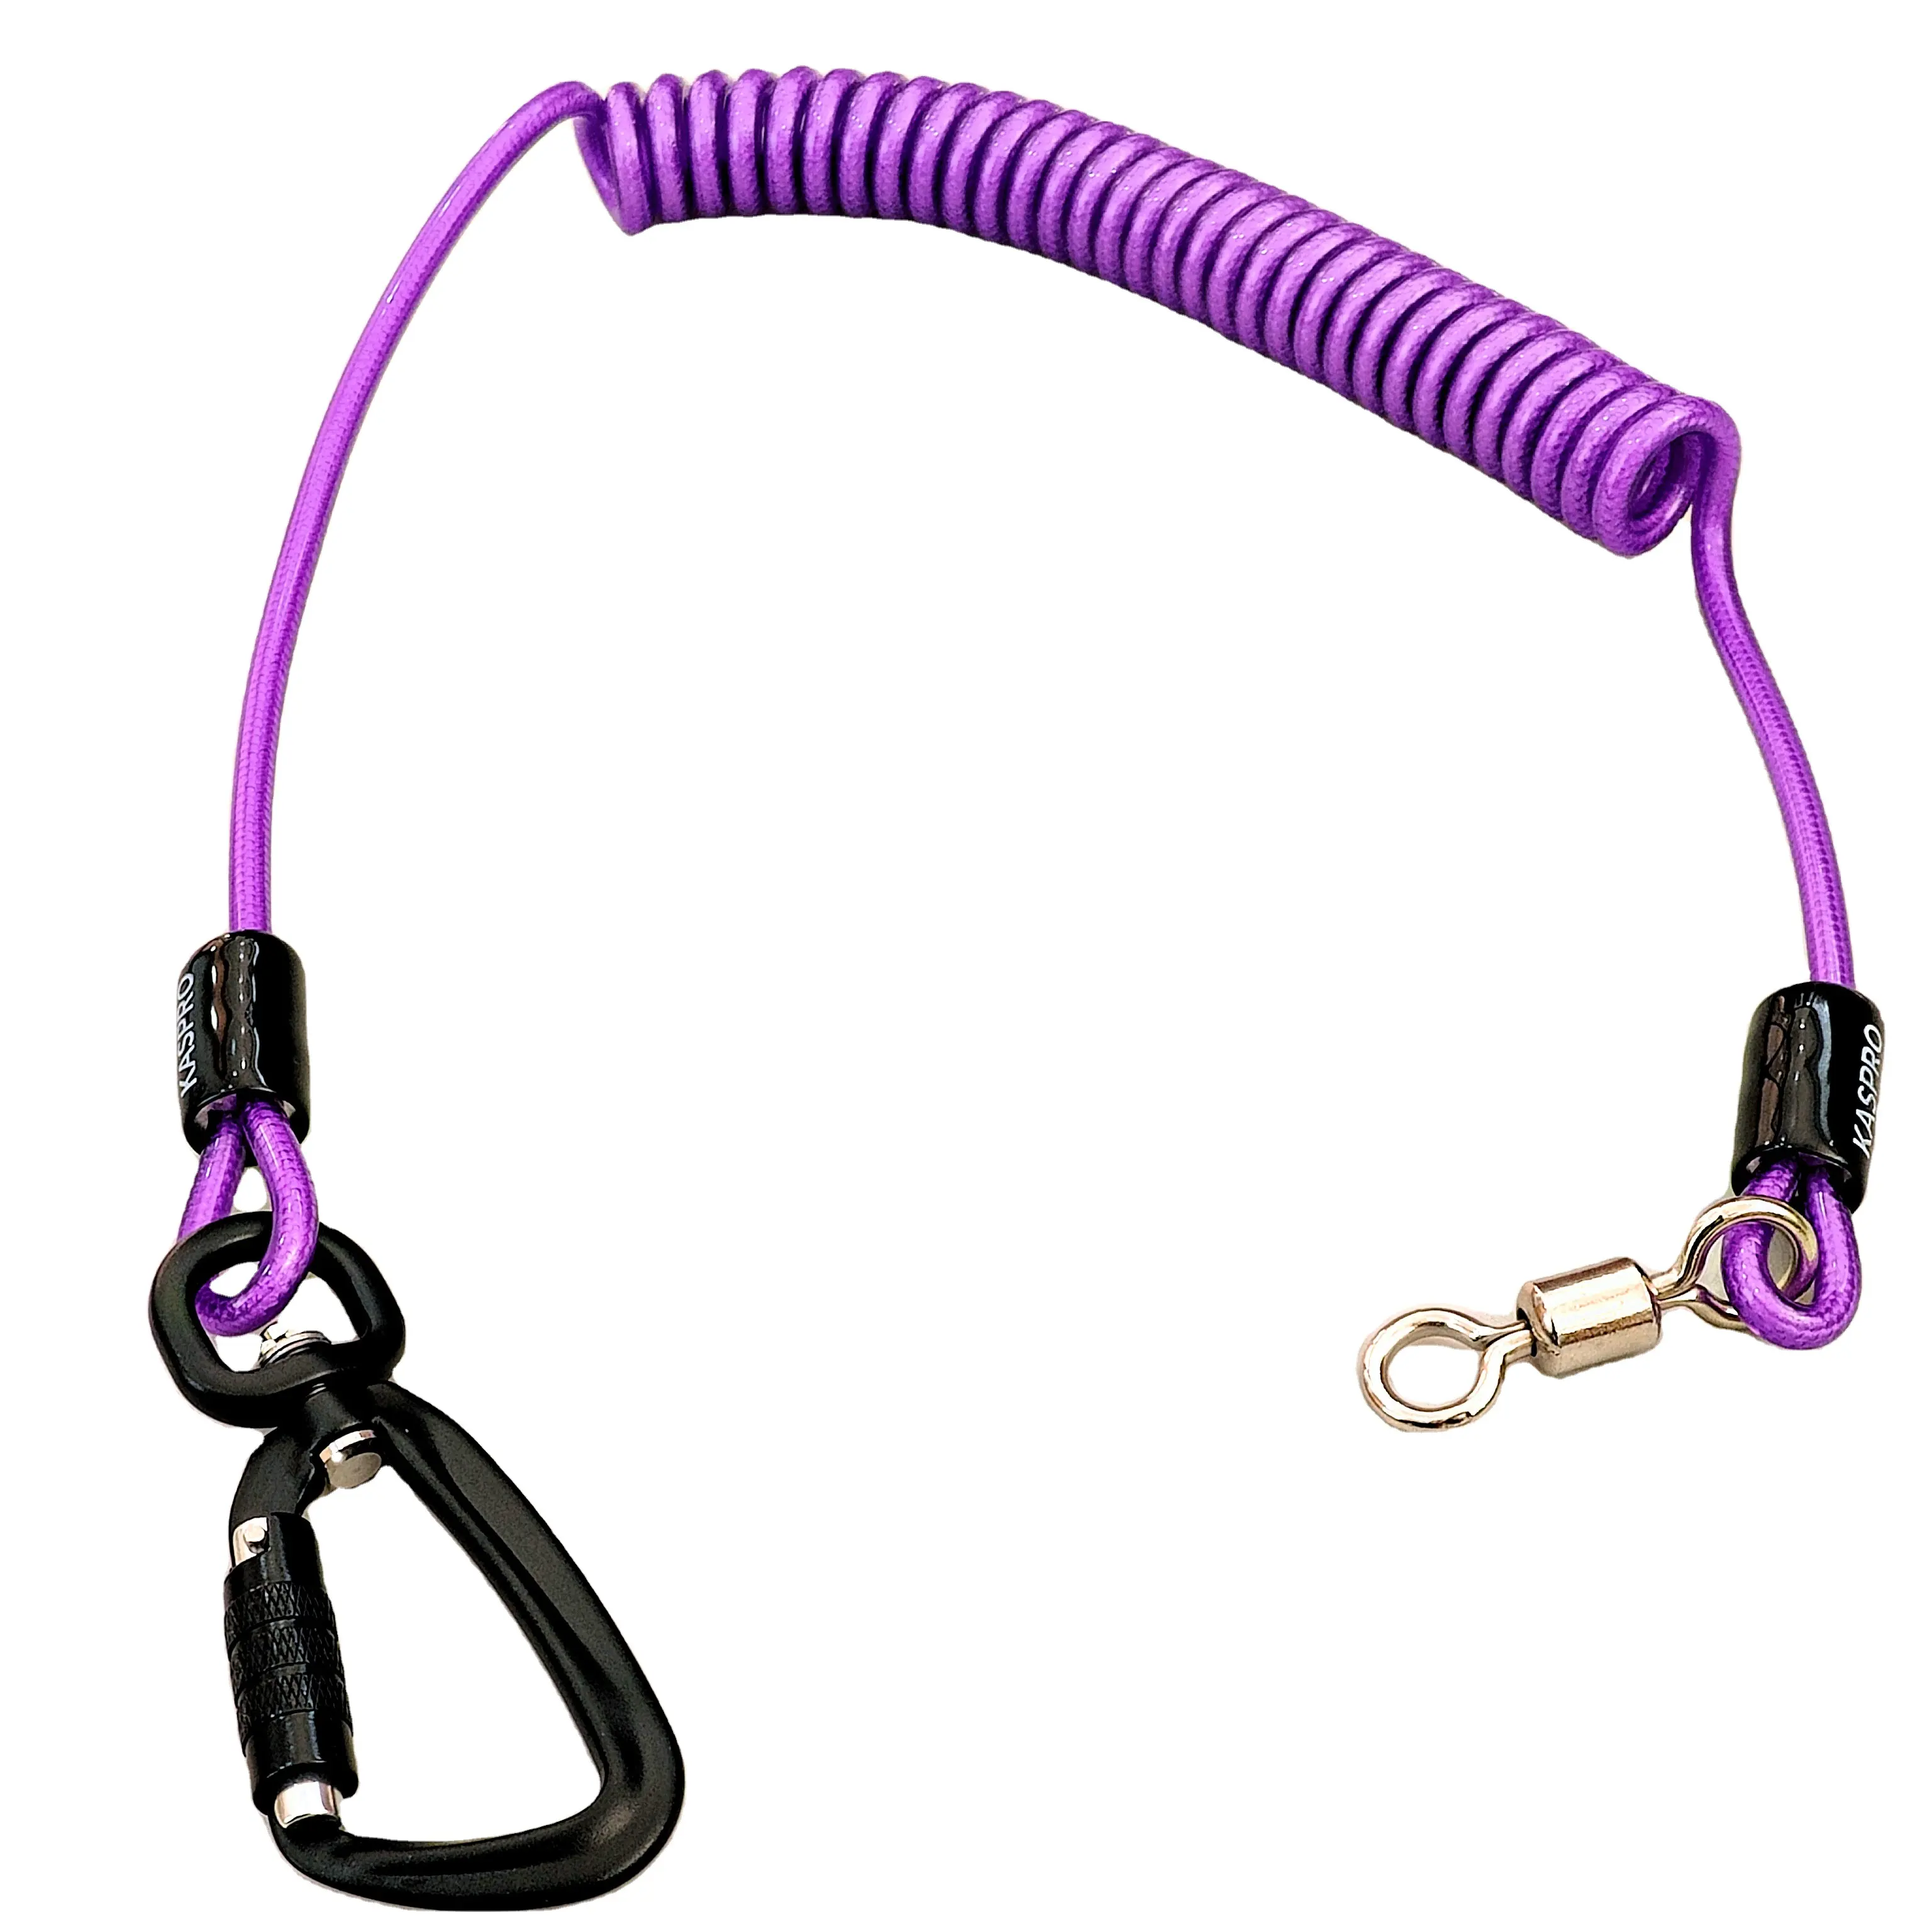 Tali pegas ungu dengan gesper mendaki. Alat untuk mencegah jatuh tali pegas pengaman.